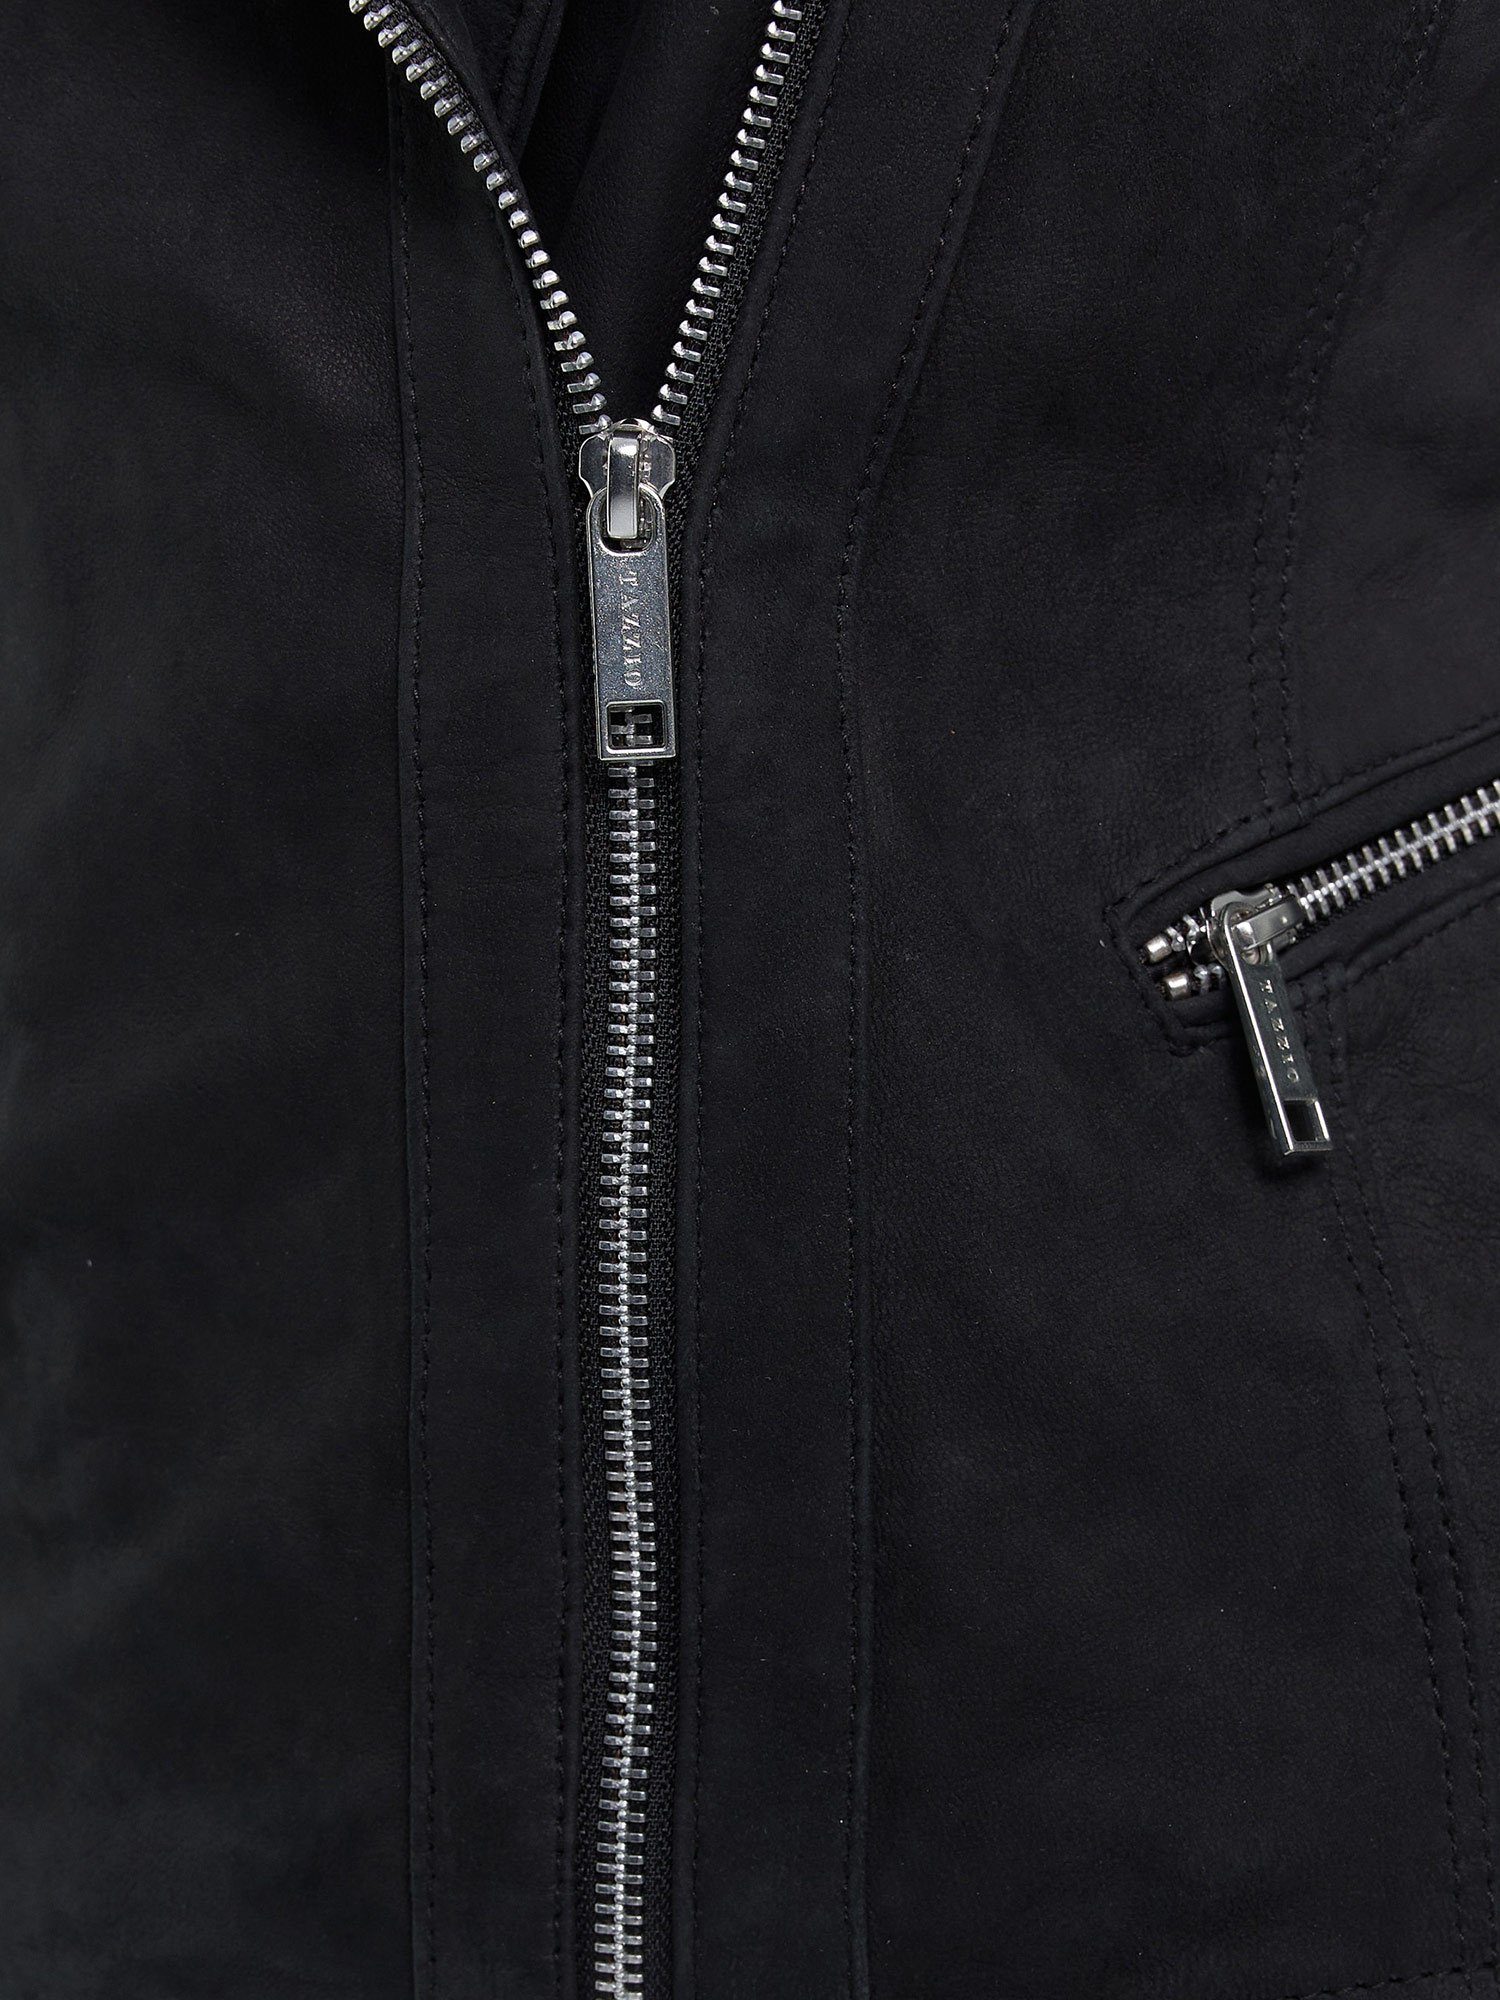 Look Damen Tazzio schwarz mit F500 Biker Lederjacke & Jacke im Zipper-Details Leder Reverskragen